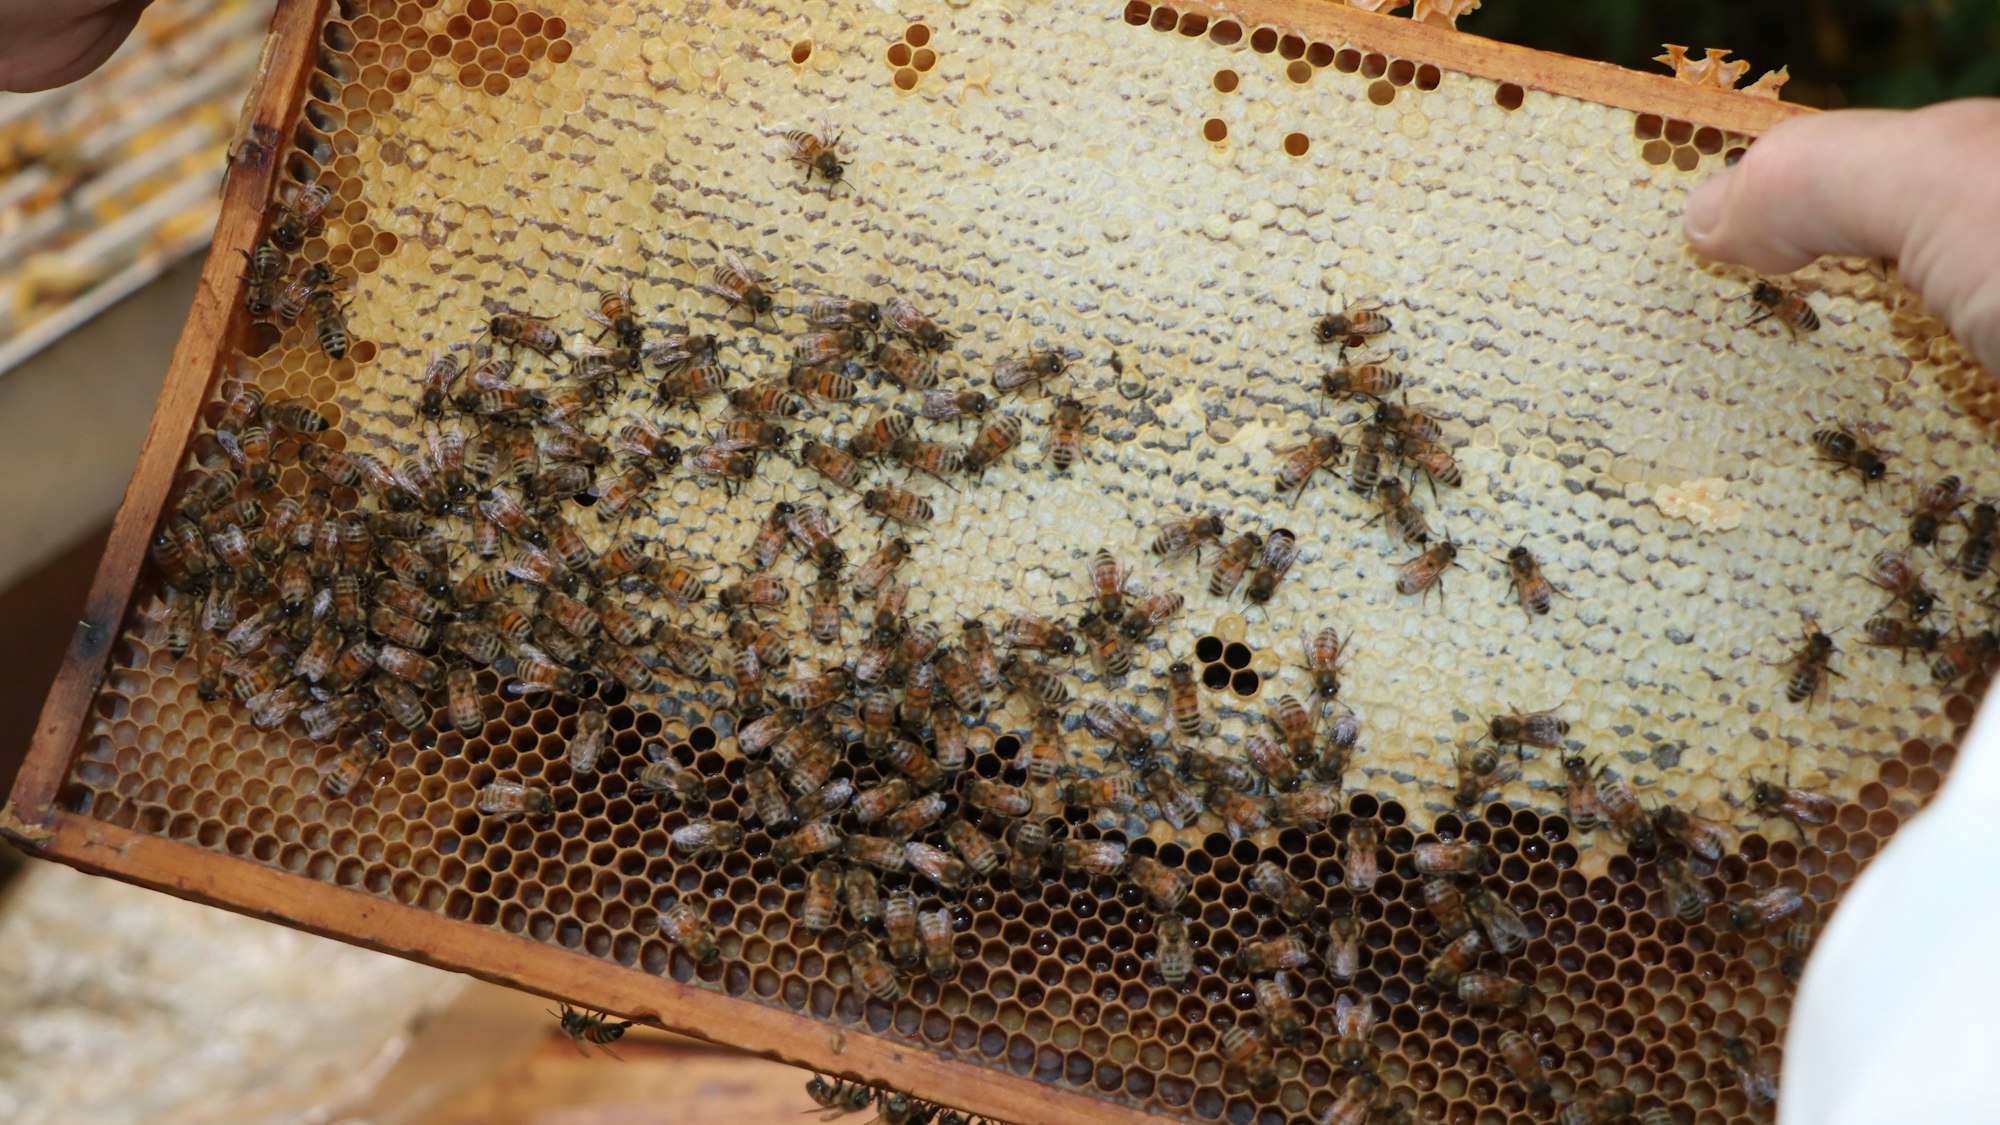 Die Bienen kriechen auf einer Wabe herum, in der sie Futter finden.